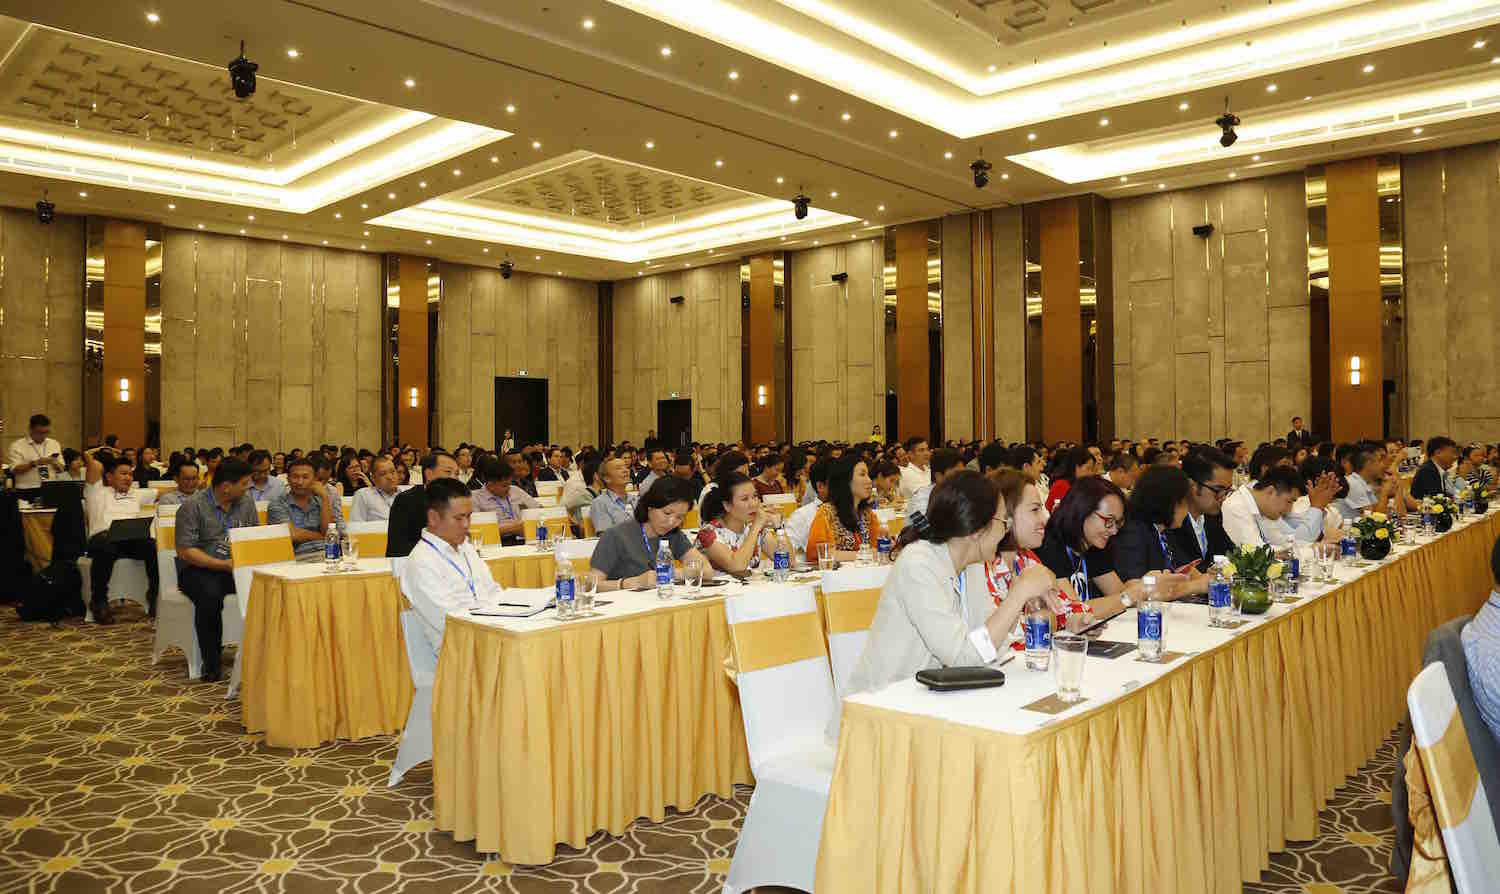 Hơn 800 khách mời, đại diện cho hơn 200 NCC lớn trong nước và quốc tế tham dự Hội nghị nhà cung cấp do Vincommerce tổ chức.